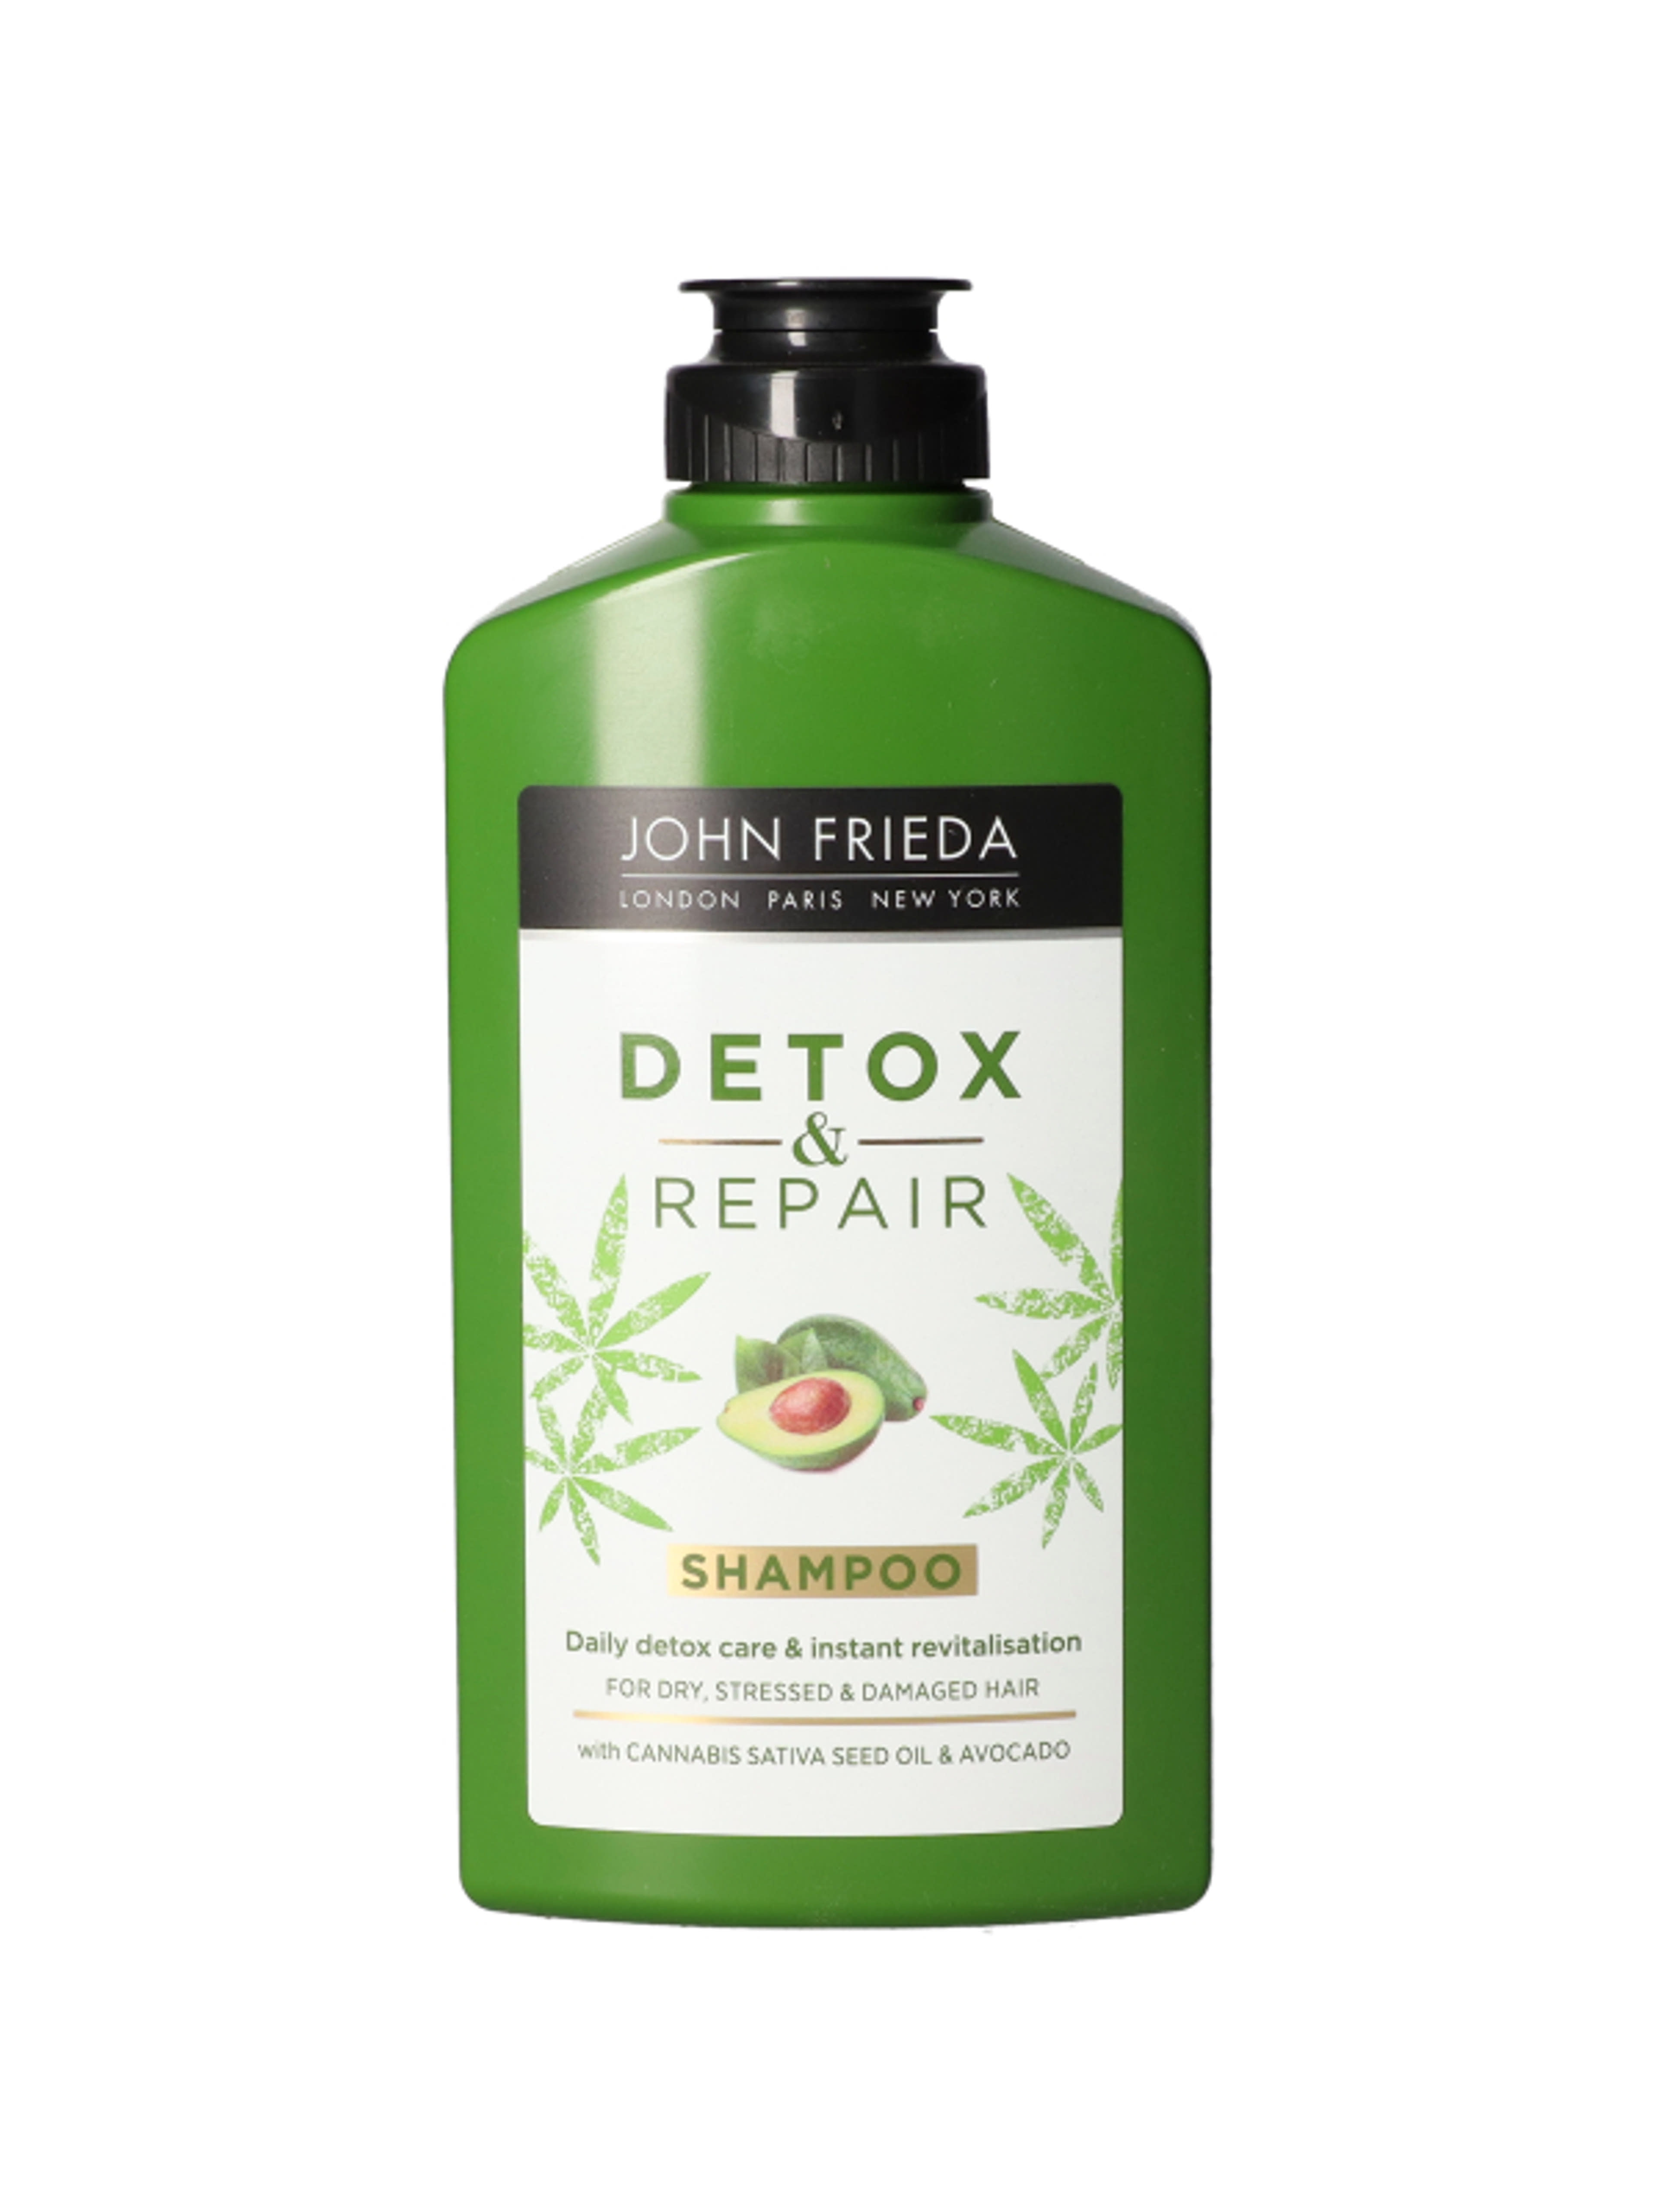 John Frieda detox & repair sampon - 250 ml-1